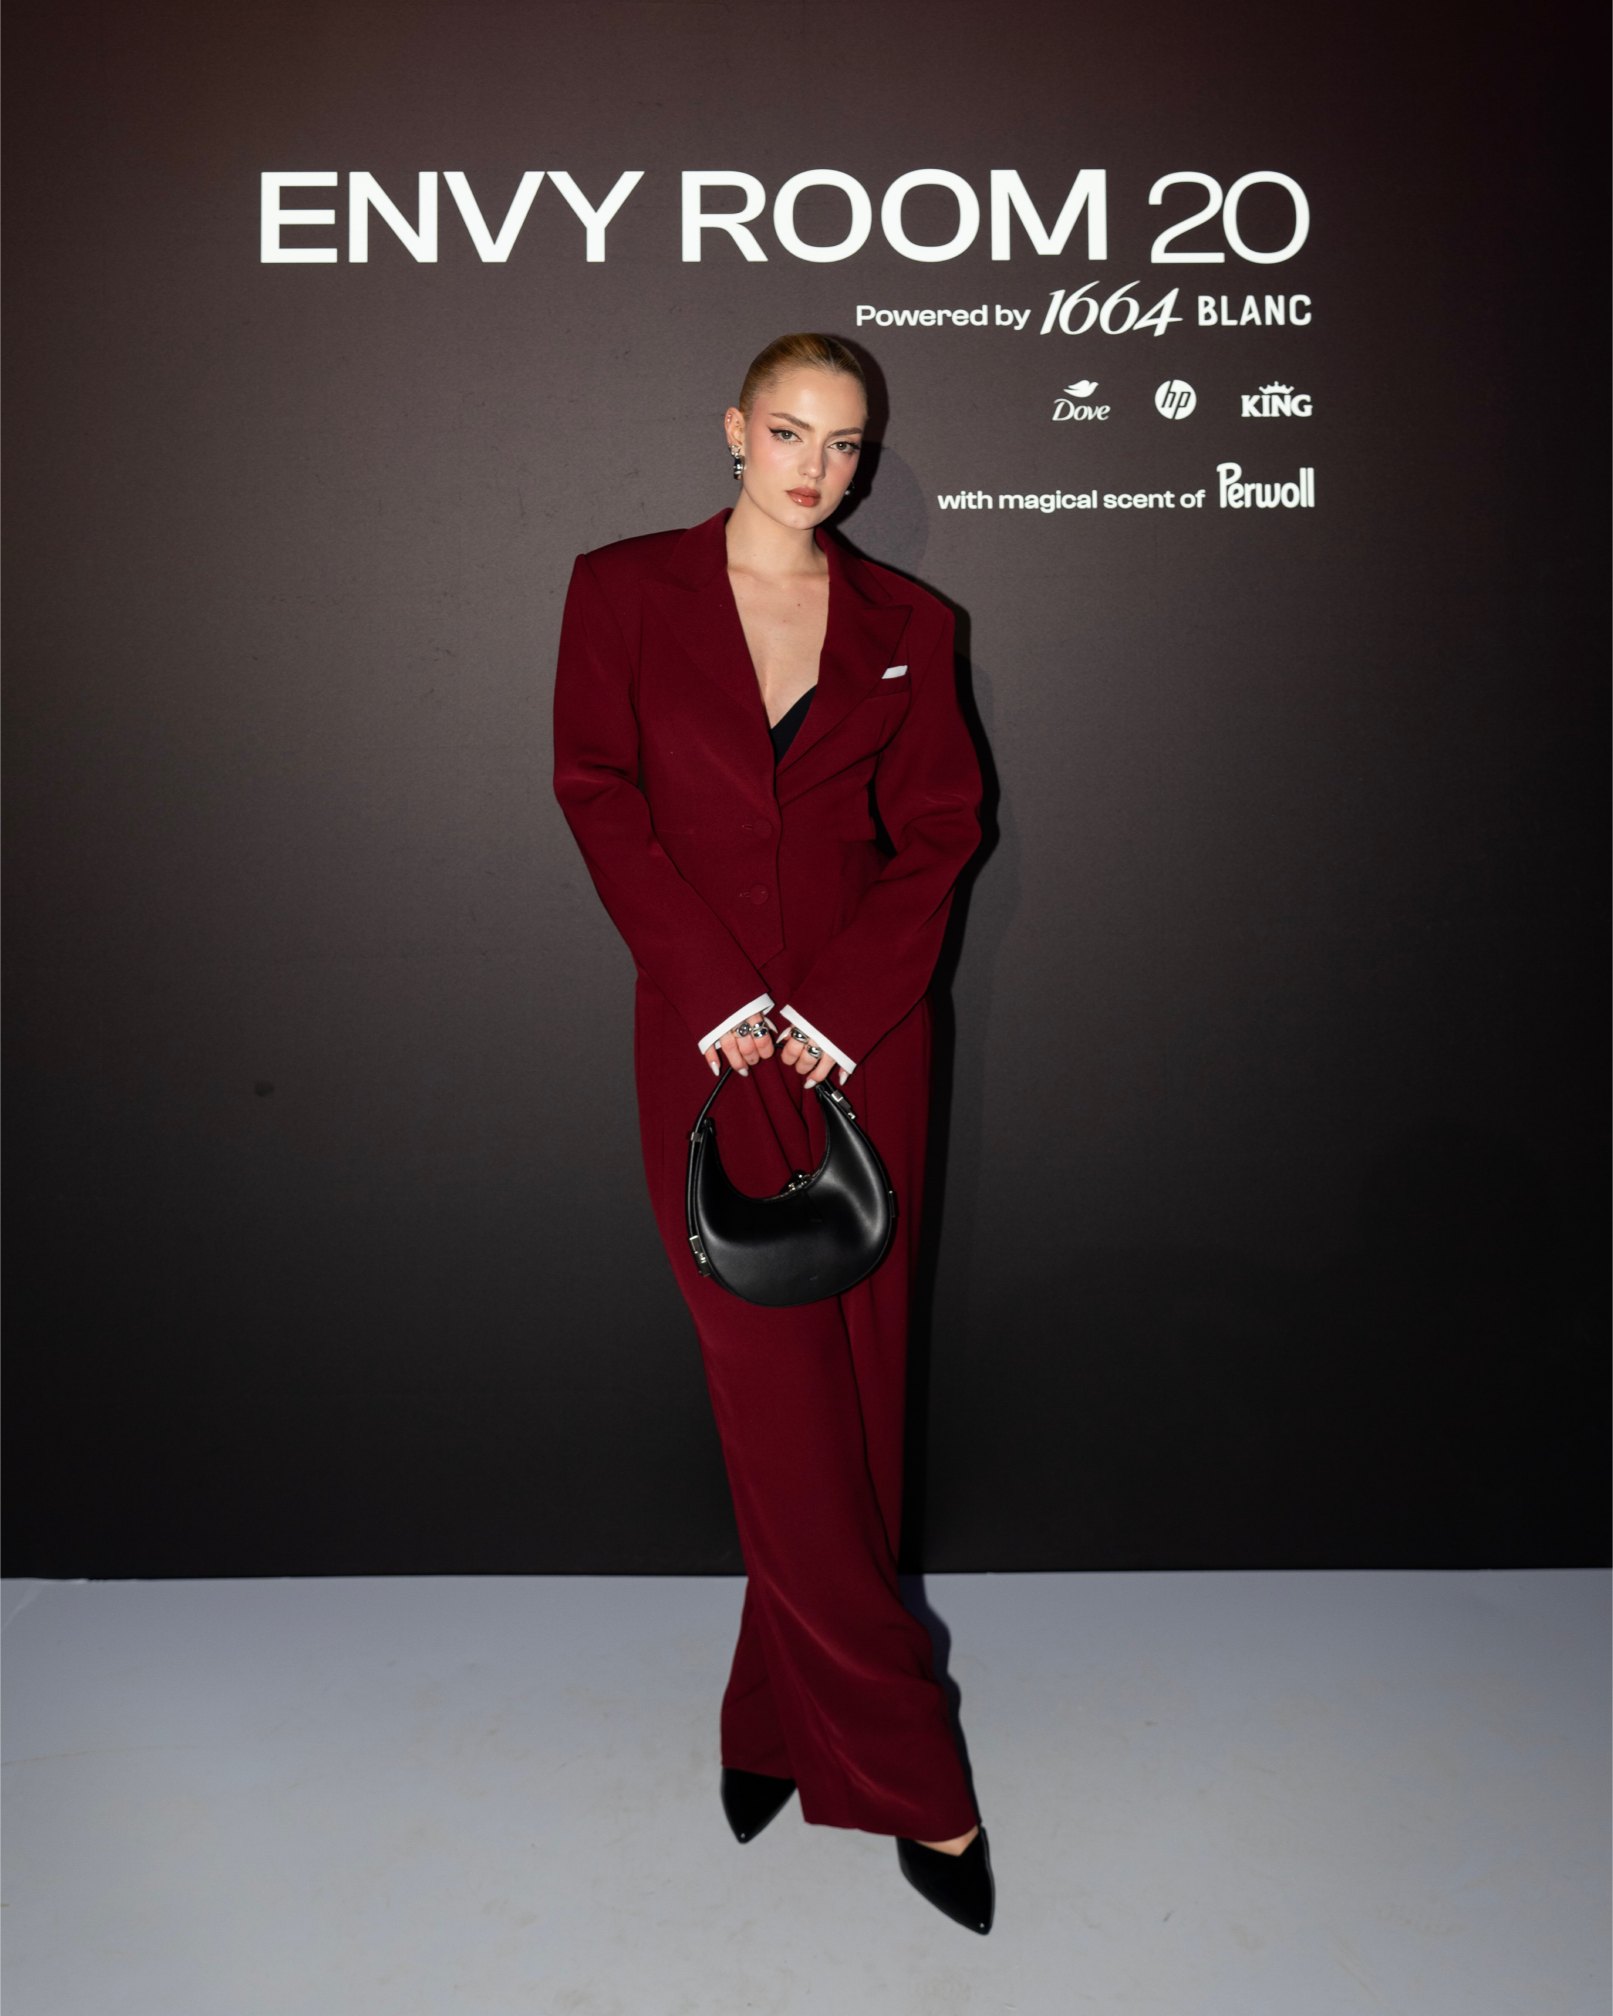 Spektakularnom slavljeničkom revijom eNVy room je obilježio 20 godina stvaranja